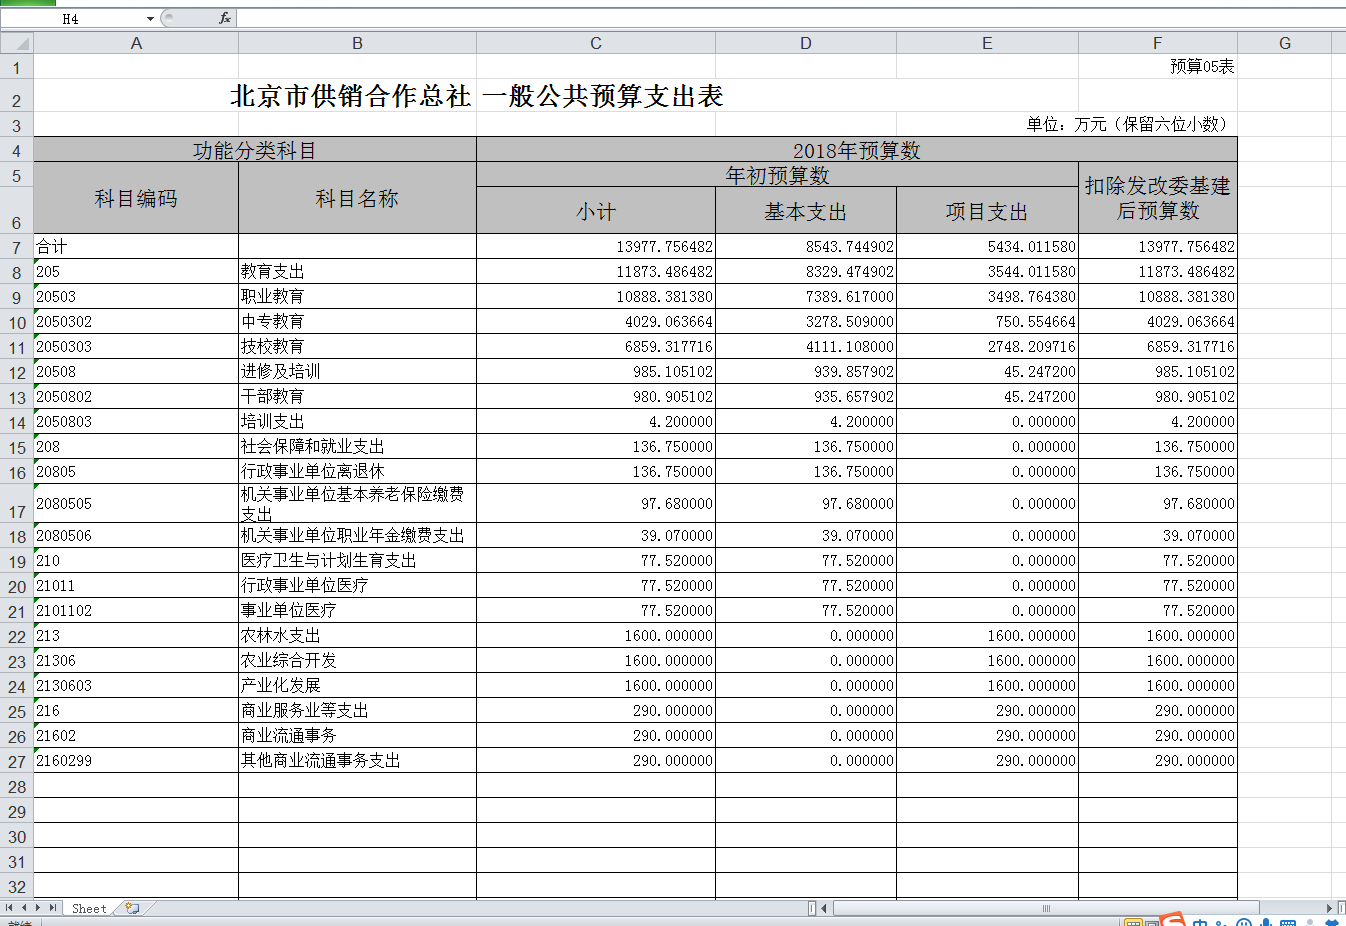 预算05表_北京市供销合作总社一般公共预算支出表.png